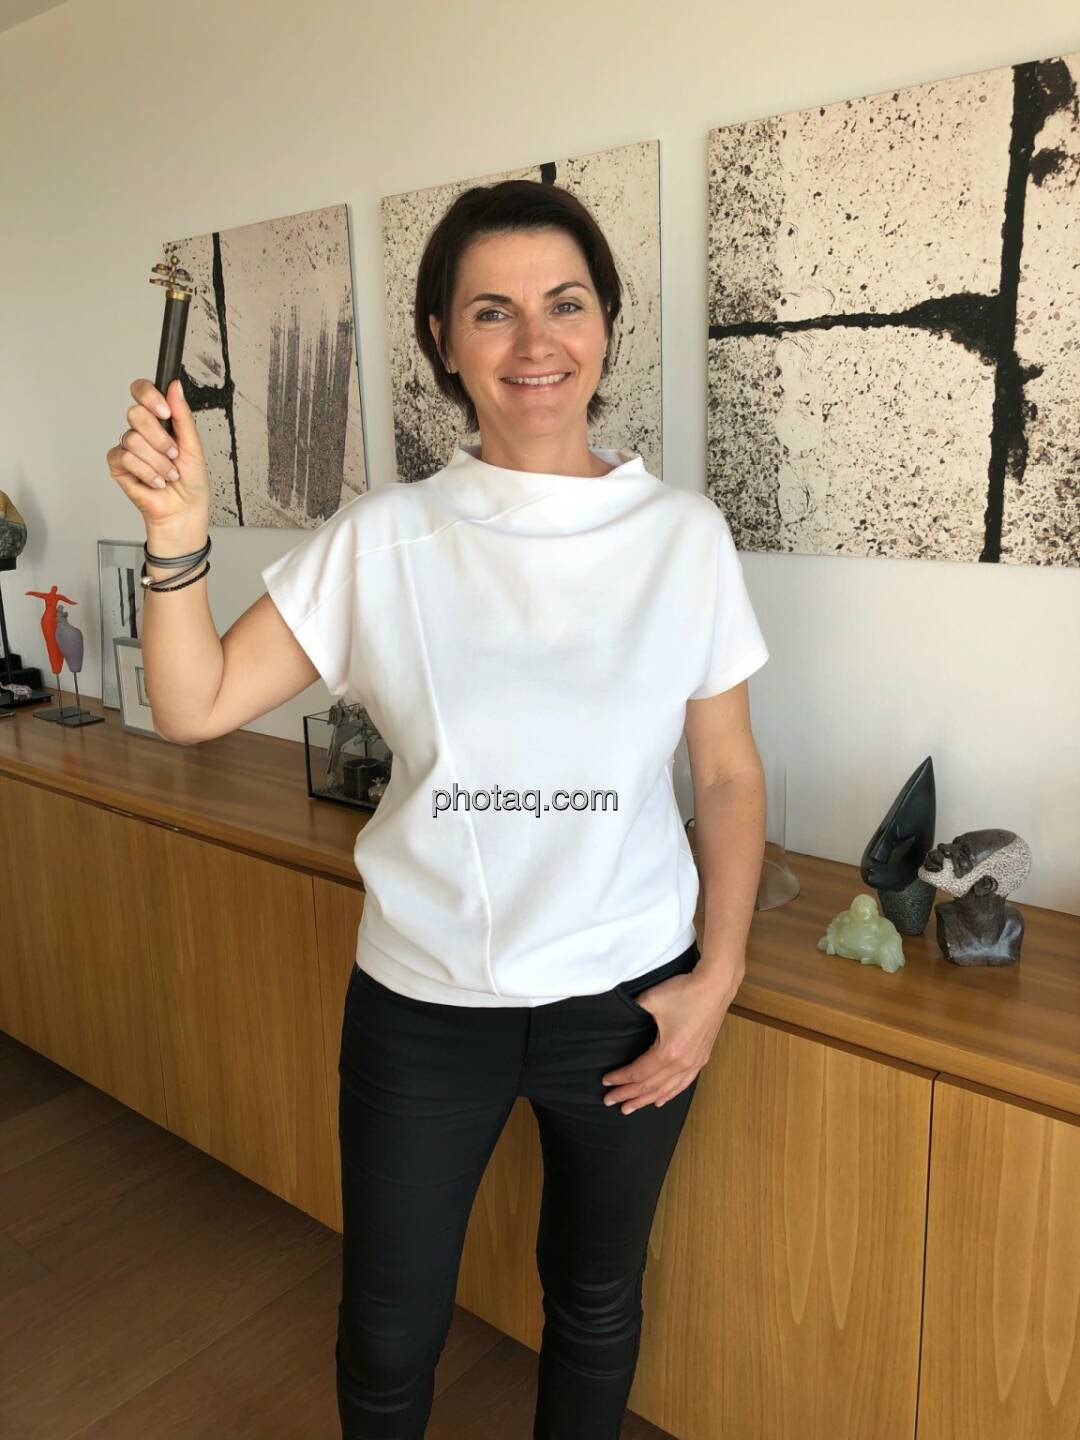 Veronika Fiereder, vorher (unisono PR), Anm.: Sehr gute Vorlage, T-Shirt wäre einzig noch einfacher zum Schriftzug-Anbringen